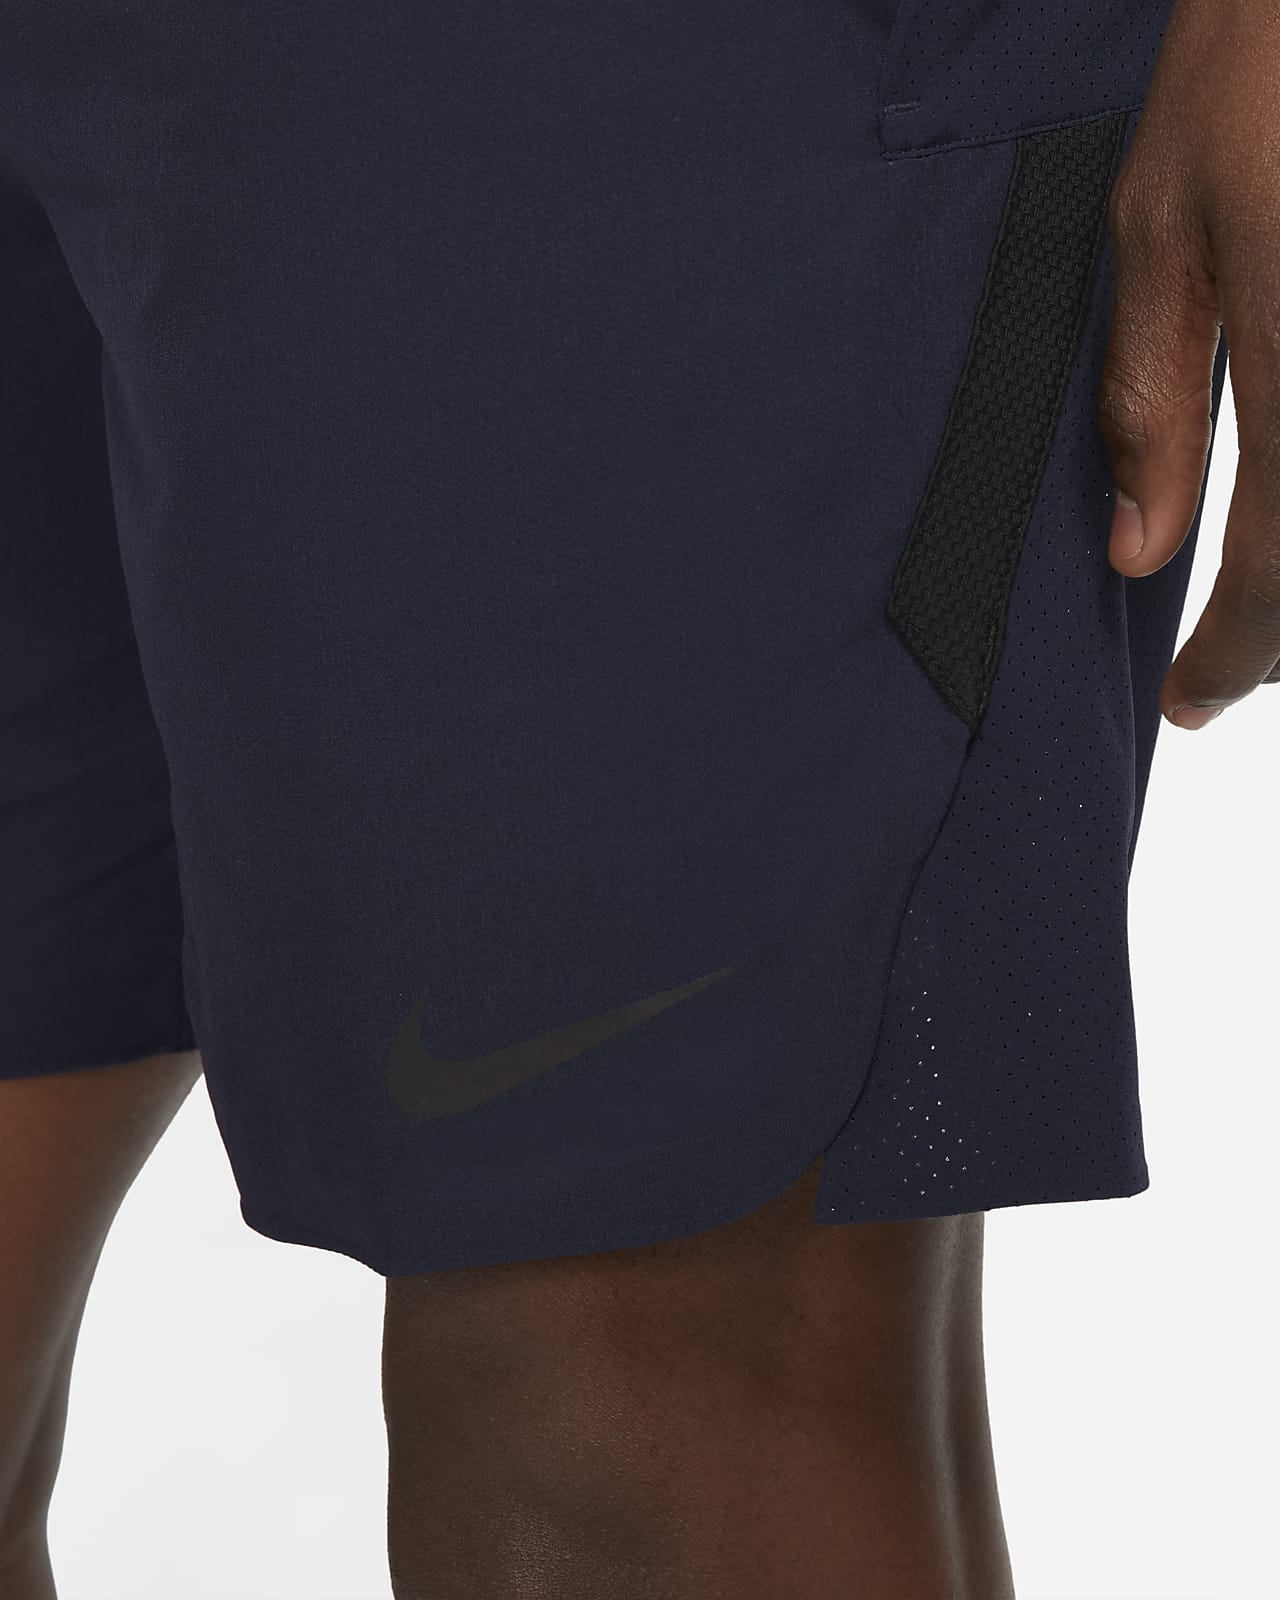 Nike Pro Dri-FIT Flex Rep Men's Shorts. Nike.com